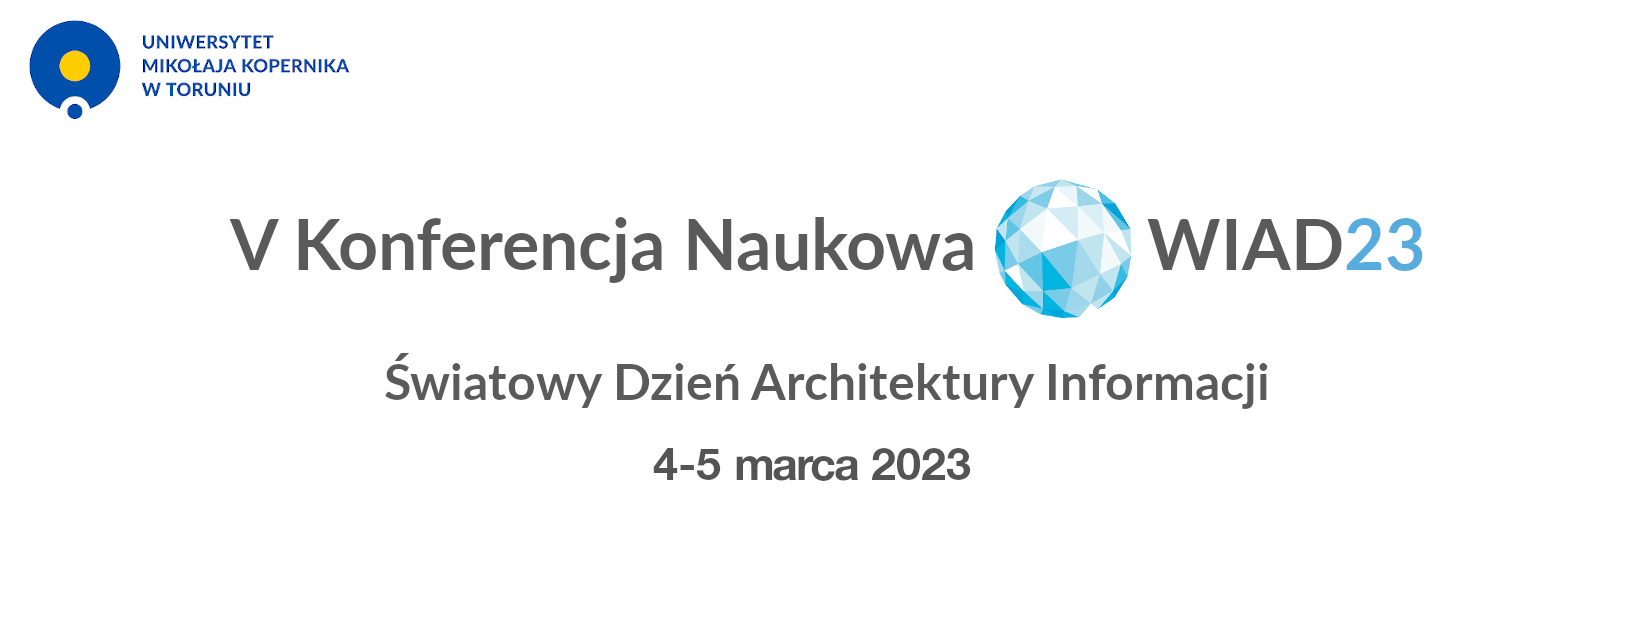 Logo konferencji 5. Konferencja Naukowa WIAD23 Światowy Dzień Architektury Informacji